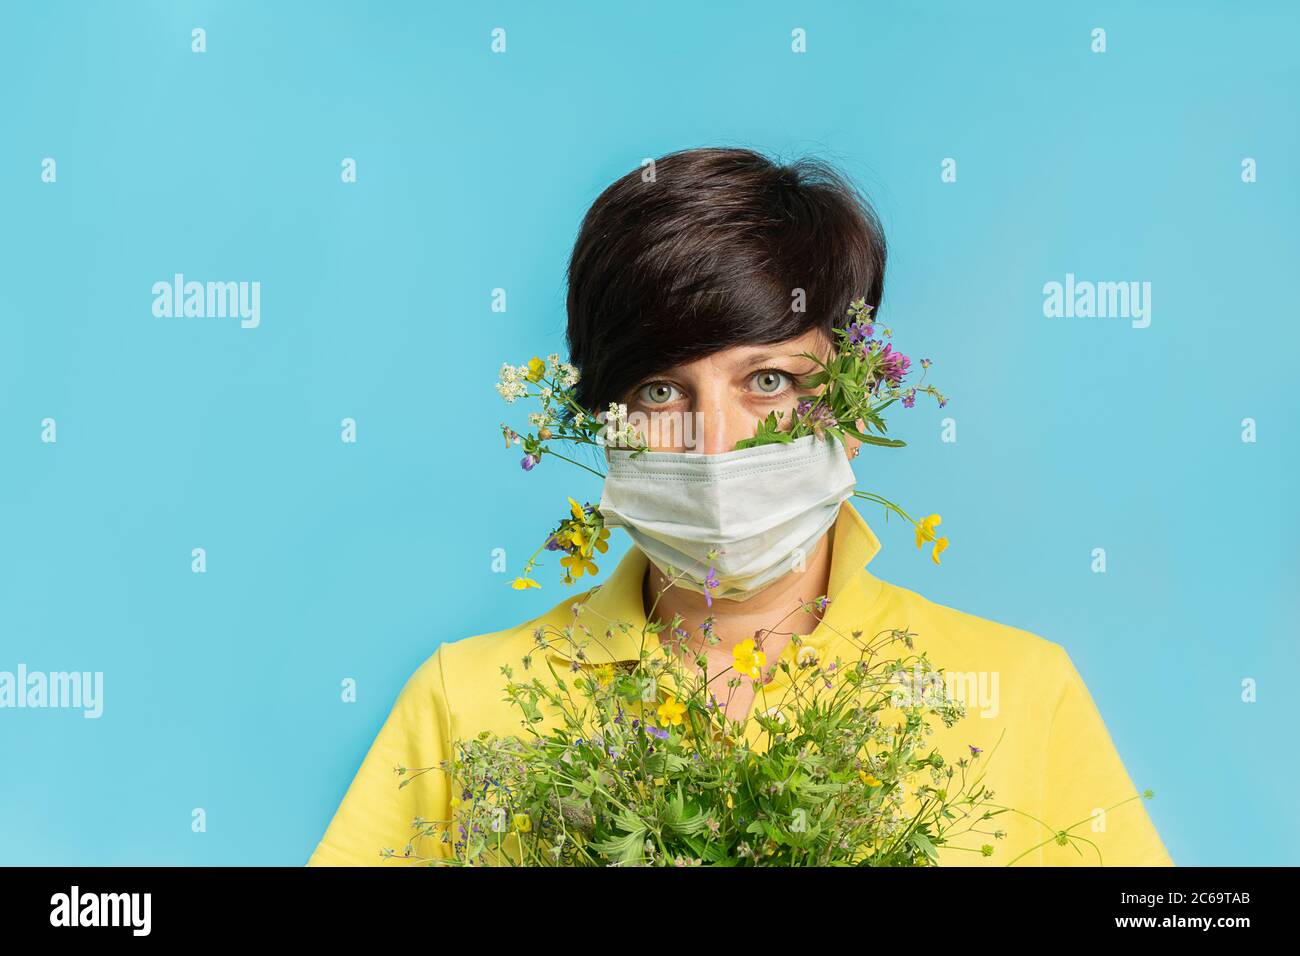 Frau in schützende medizinische Maske hält frische Blumen auf blauem Hintergrund. Das Konzept der Gesundheit und Allergieprävention Stockfoto